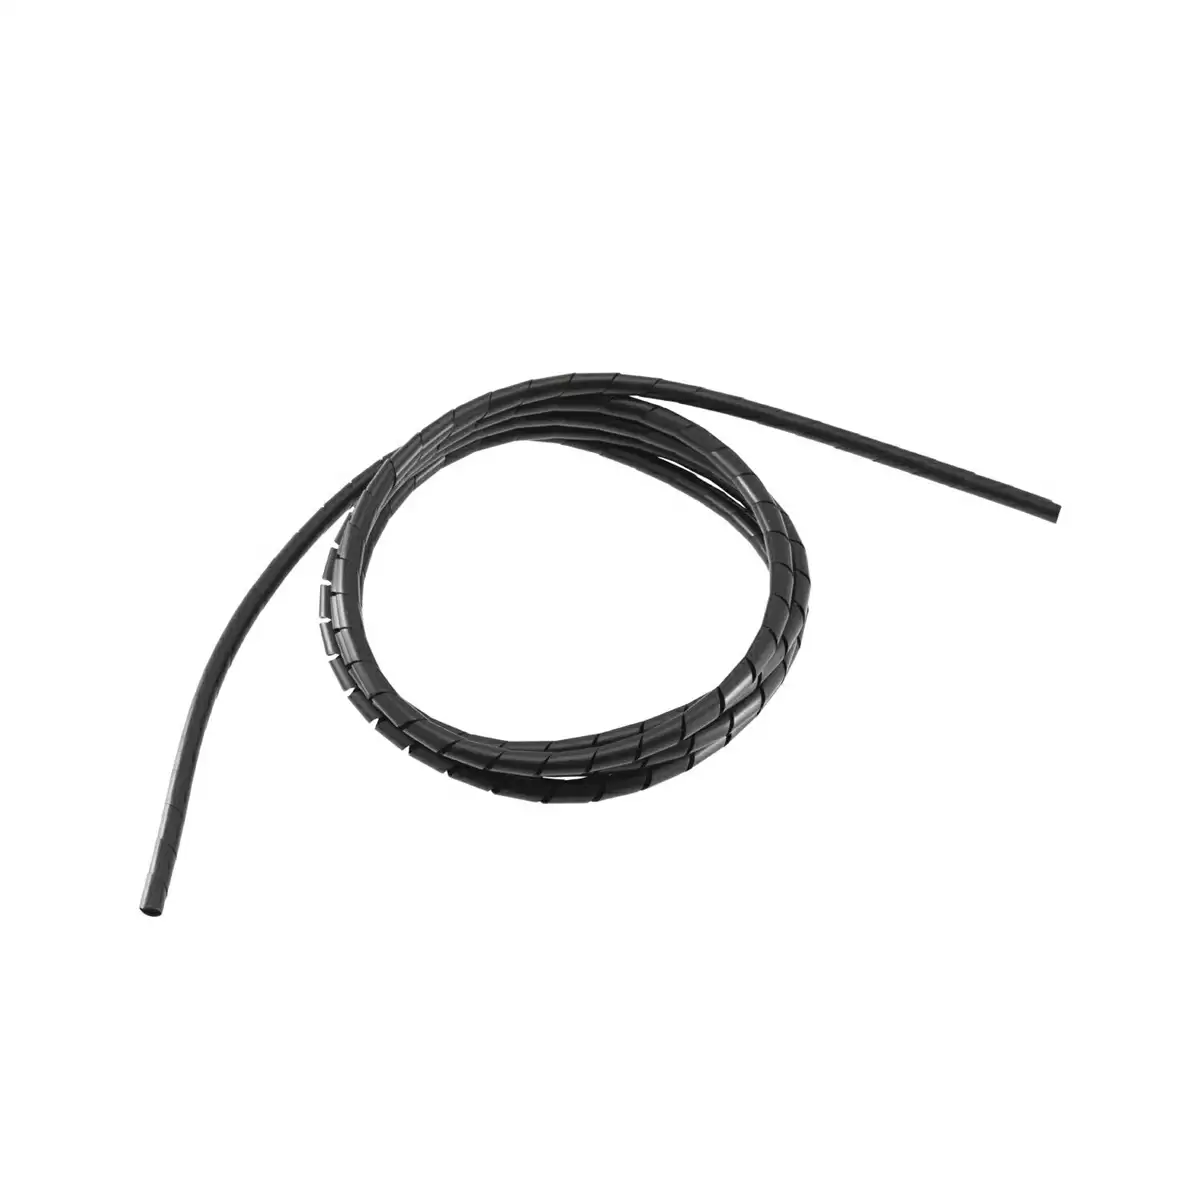 Gaine de protection Enrouleur de câble 6mm x 200cm Noir - image